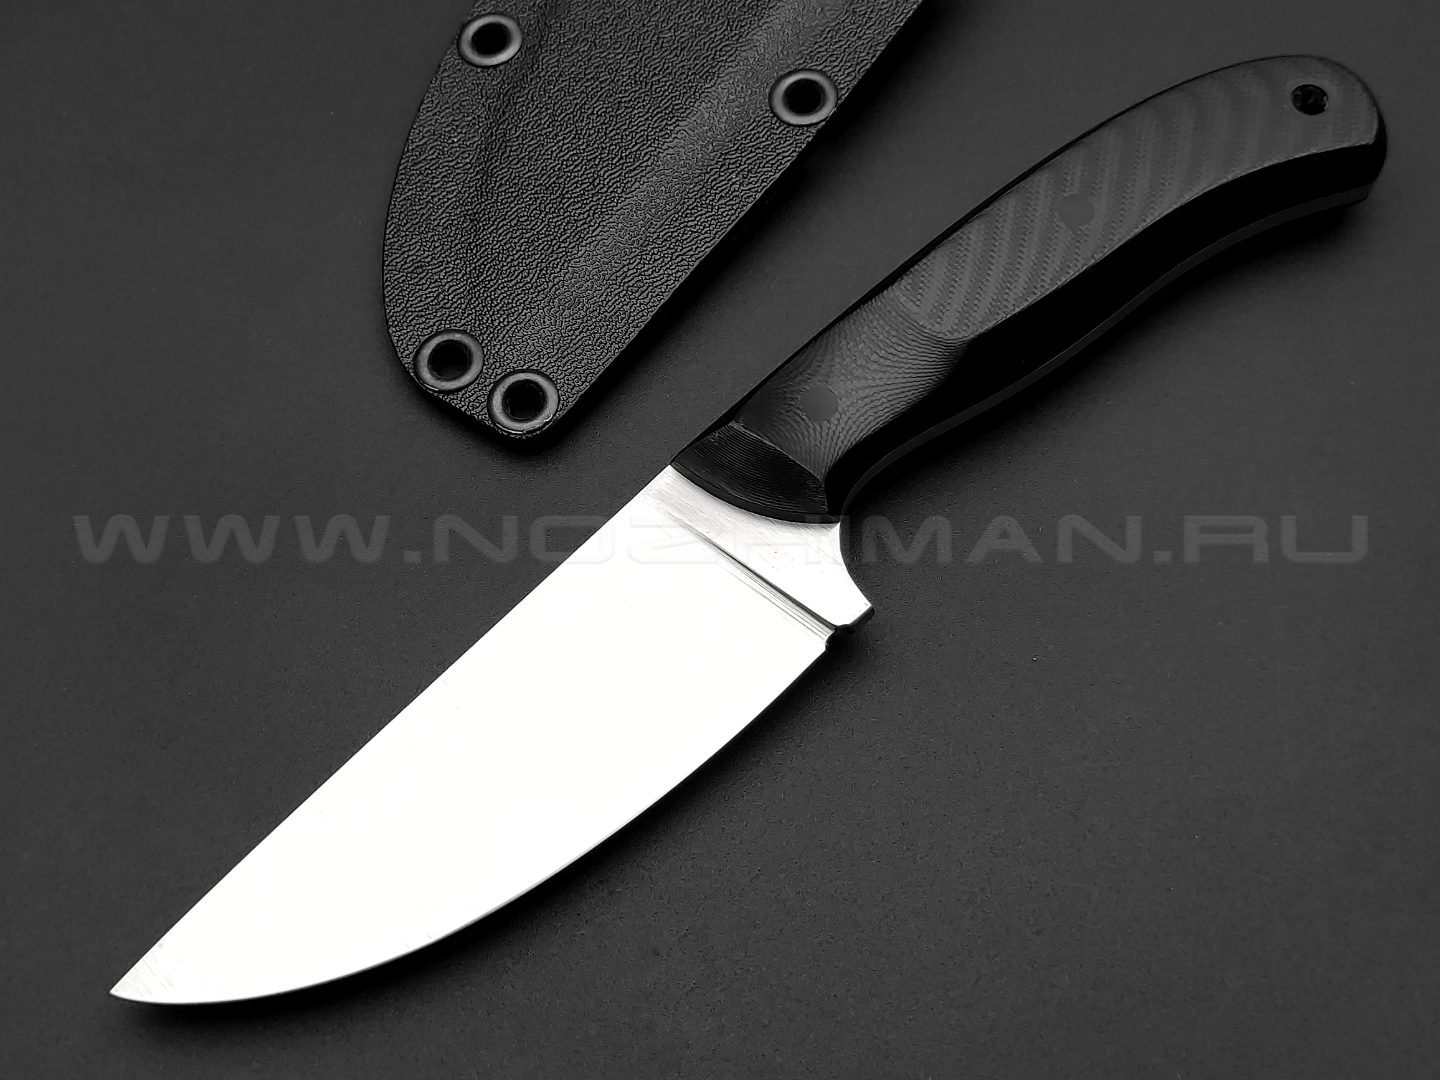 Волчий Век нож Mark-I сталь M390 WA, рукоять G10 black